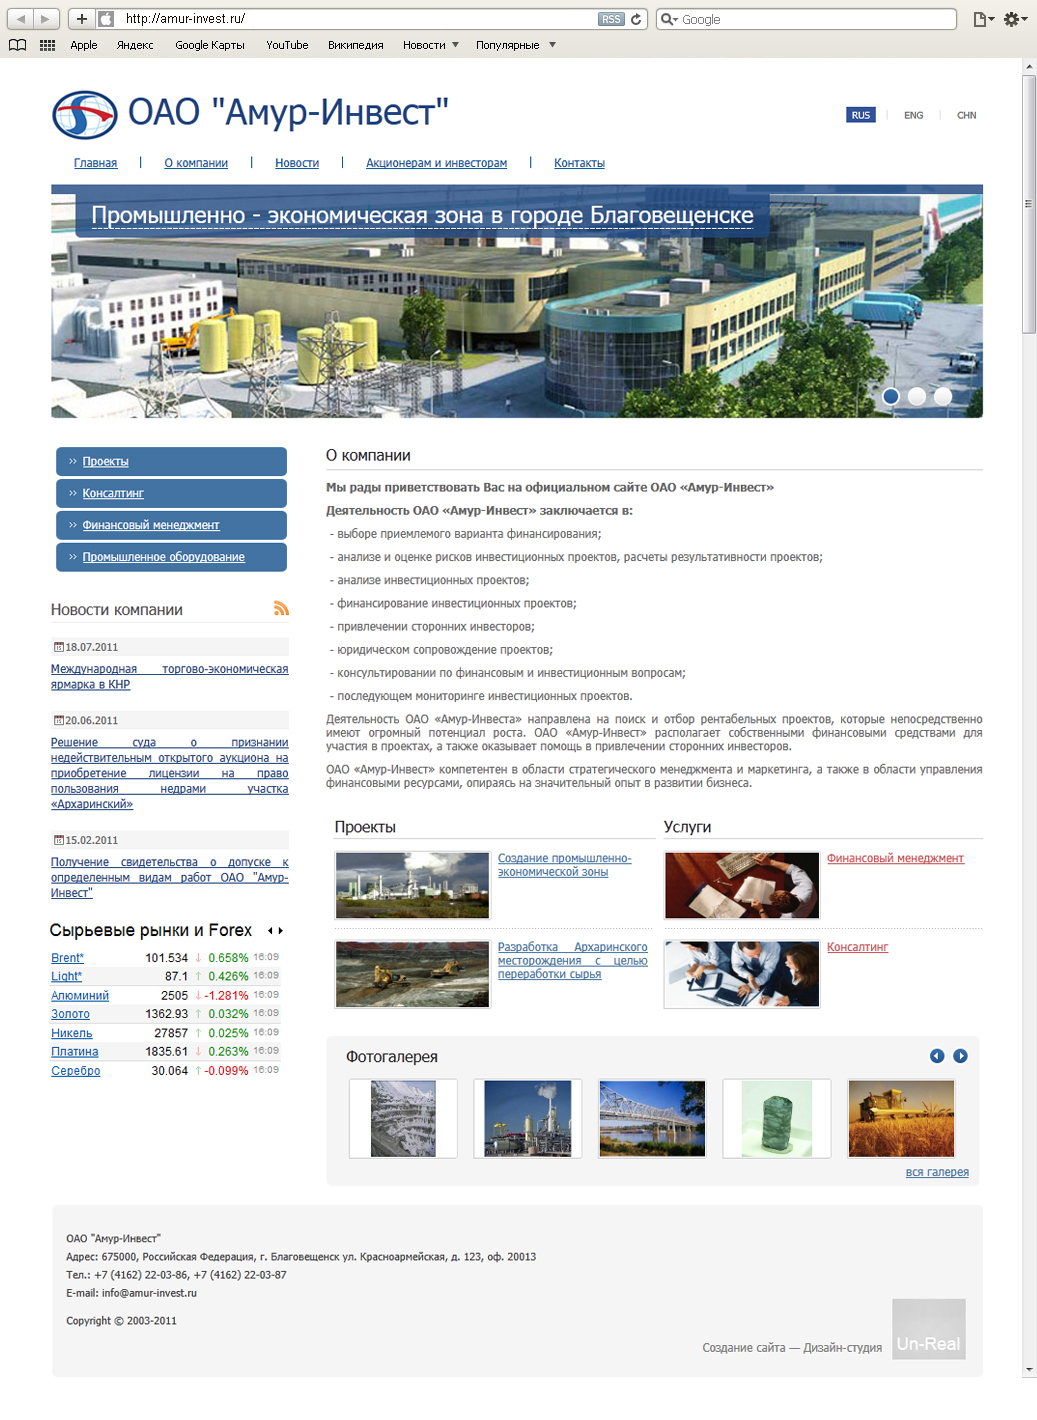 Создание корпоративного сайта для ОАО «Амур-Инвест»